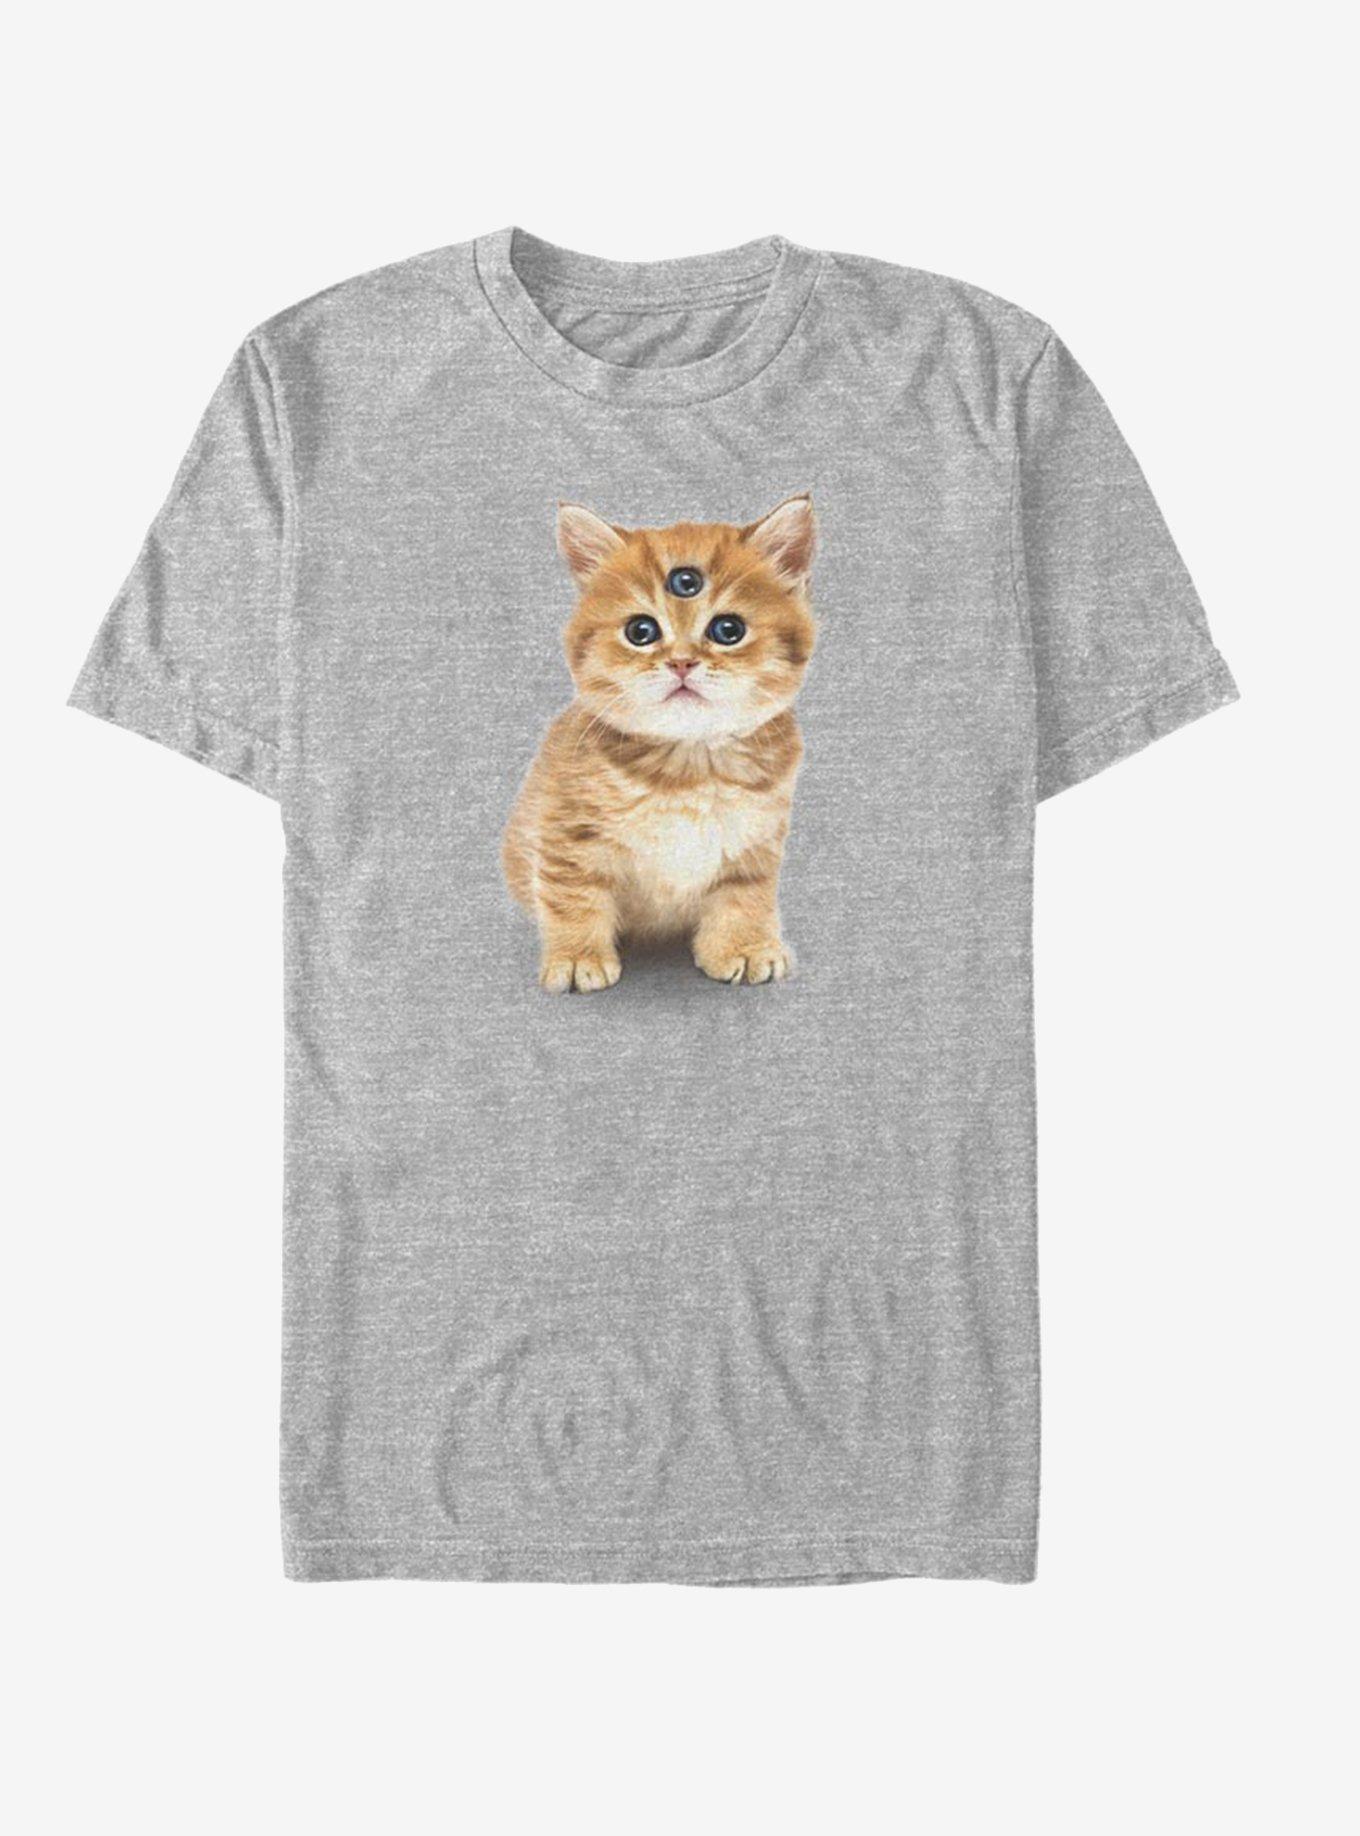 Catclops Three Eyed Kitten T-Shirt